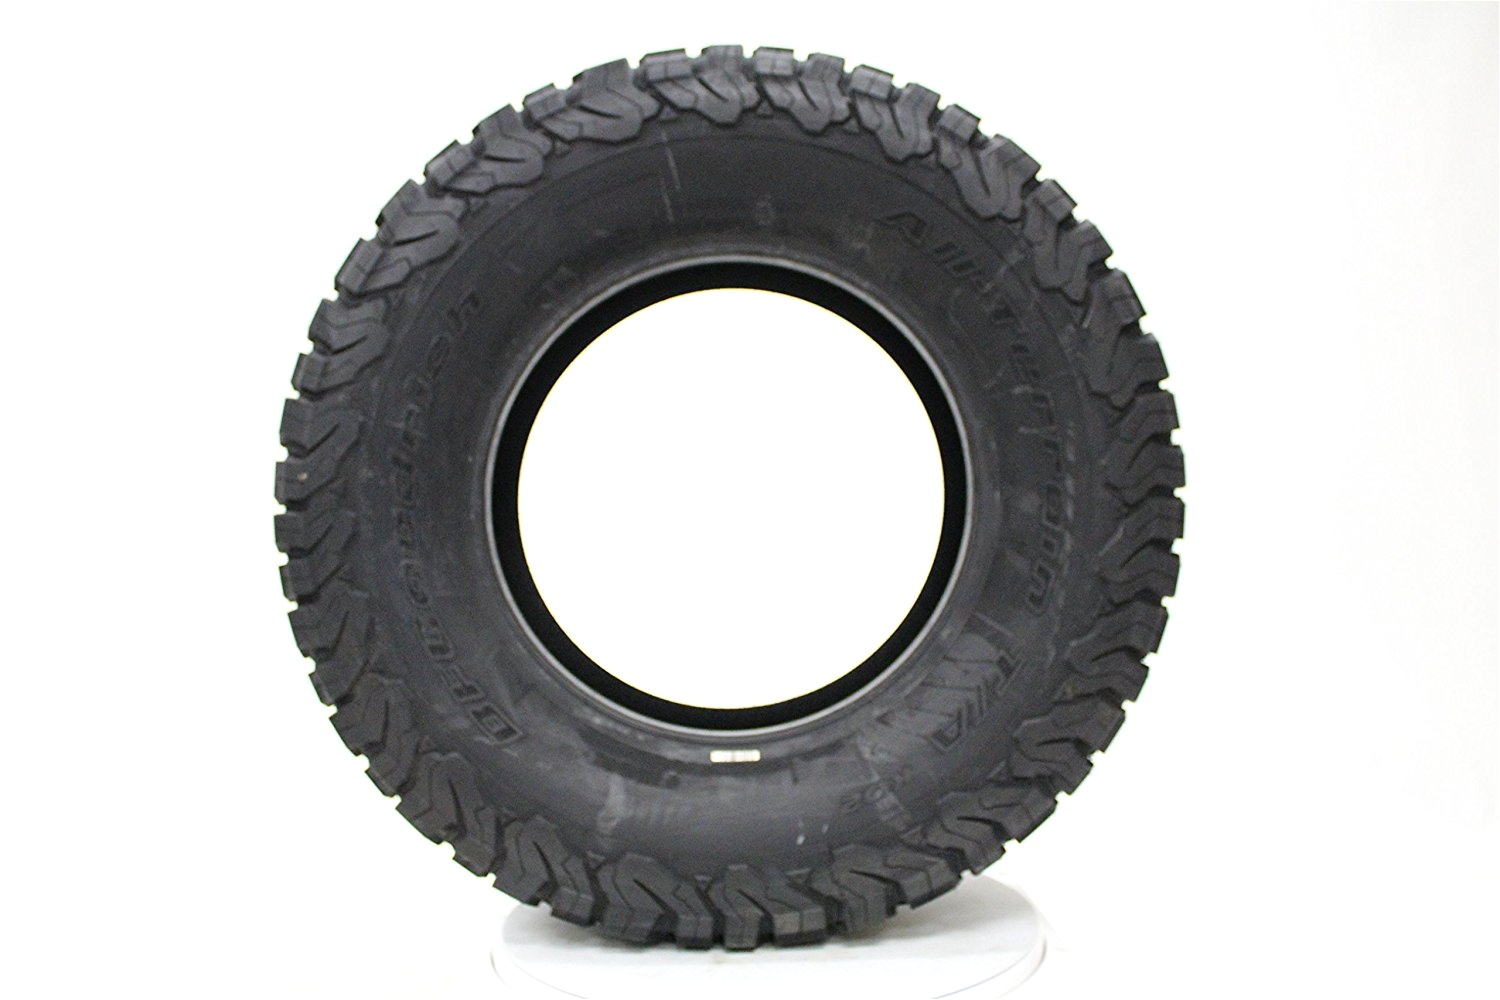 amazon com bfgoodrich all terrain t a ko2 radial tire 285 65r18 125r bfgoodrich tires automotive